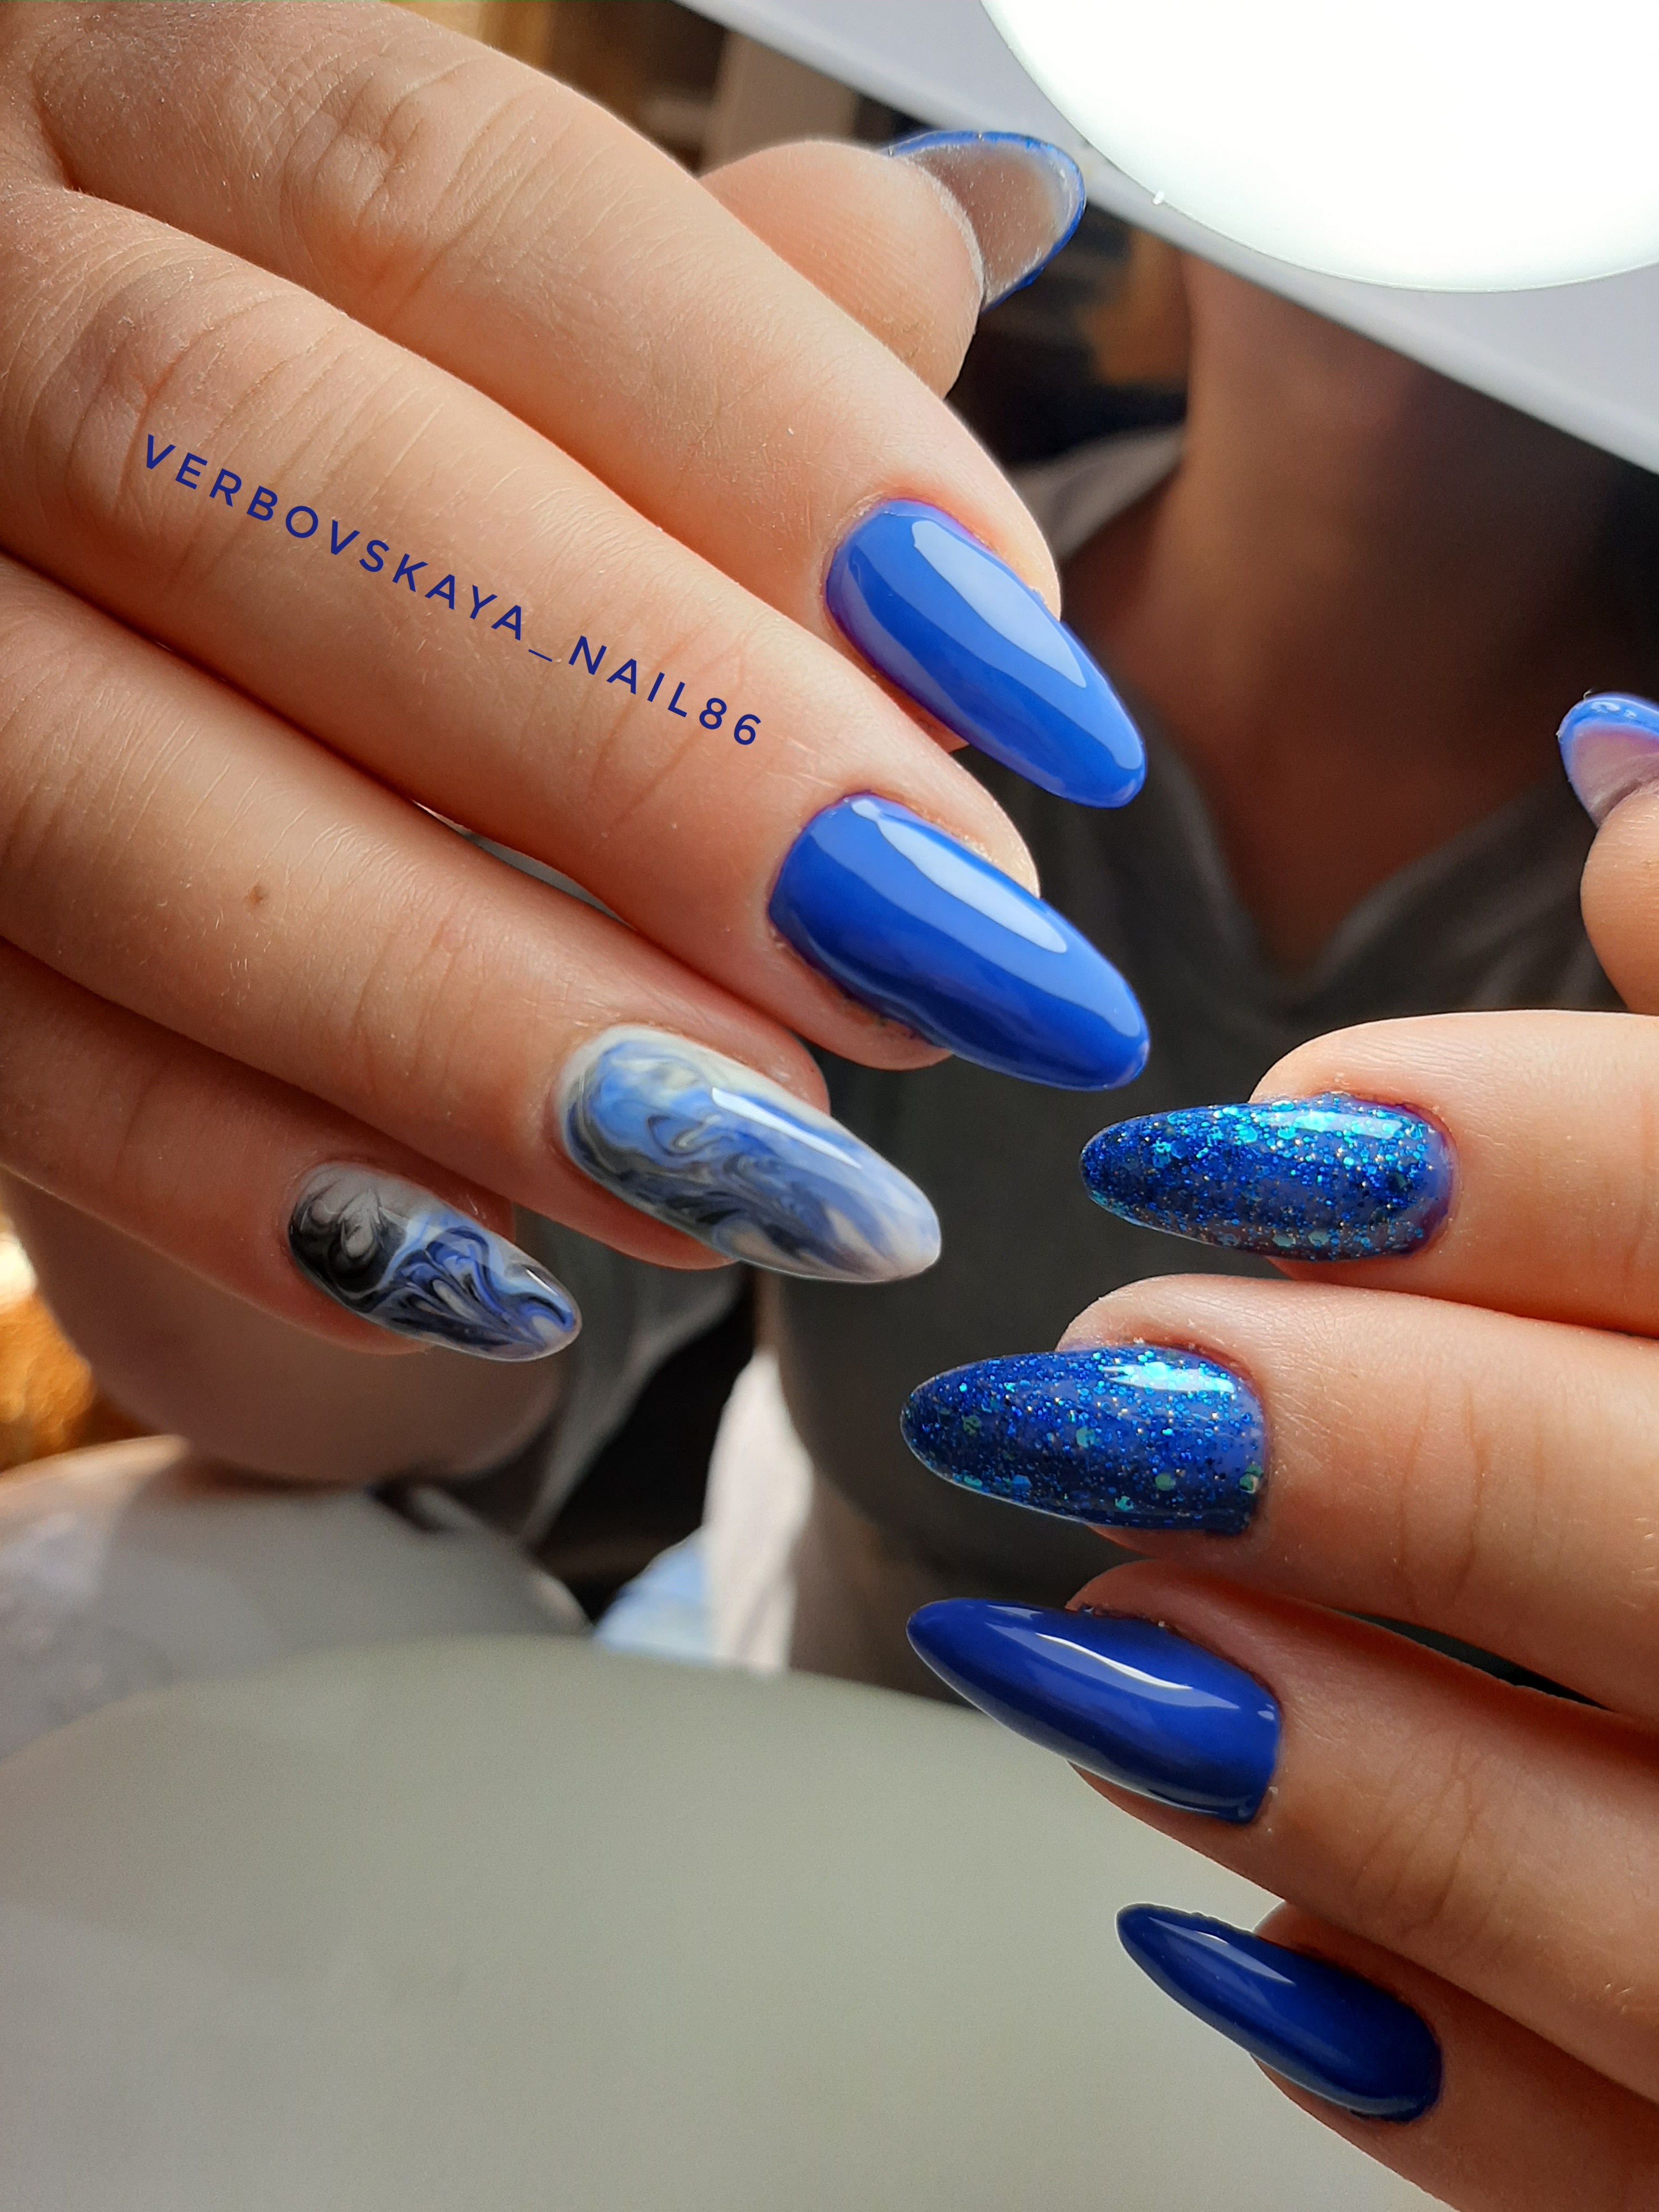 Маникюр с морским дизайном и блестками в синем цвете на длинные ногти.